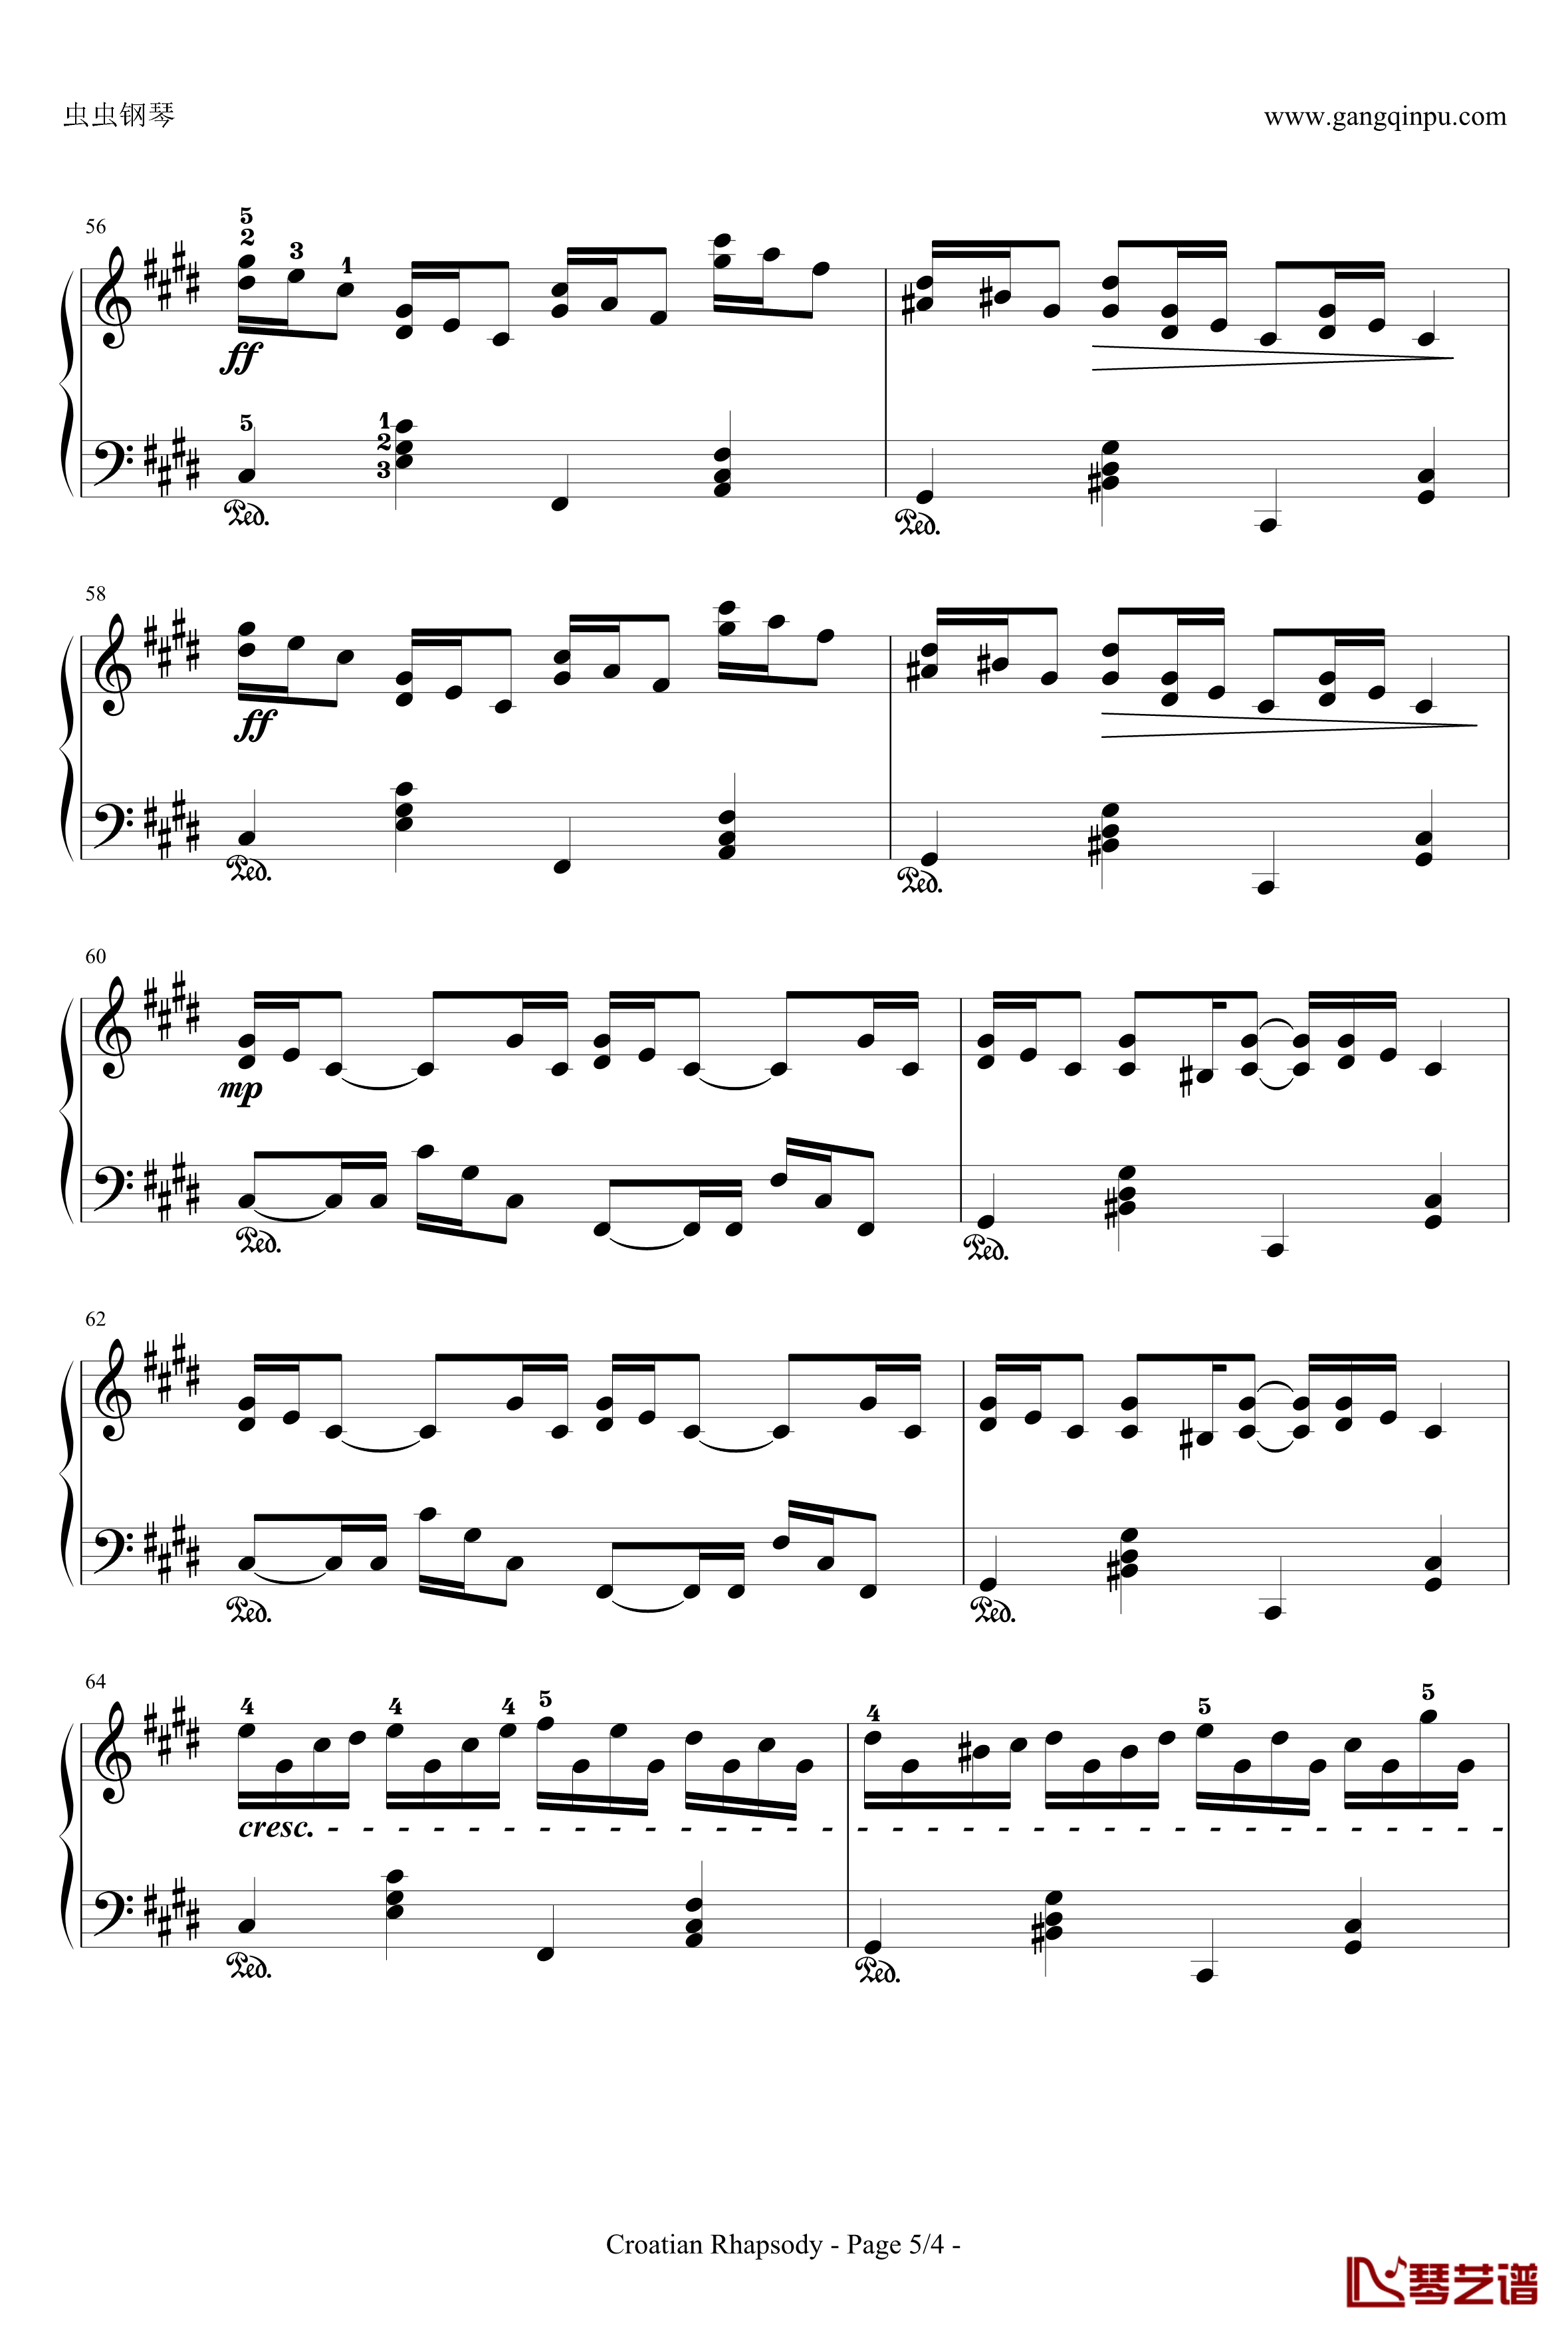 克罗地亚狂想曲钢琴谱-带指法简易版学生最爱-马克西姆-Maksim·Mrvica5